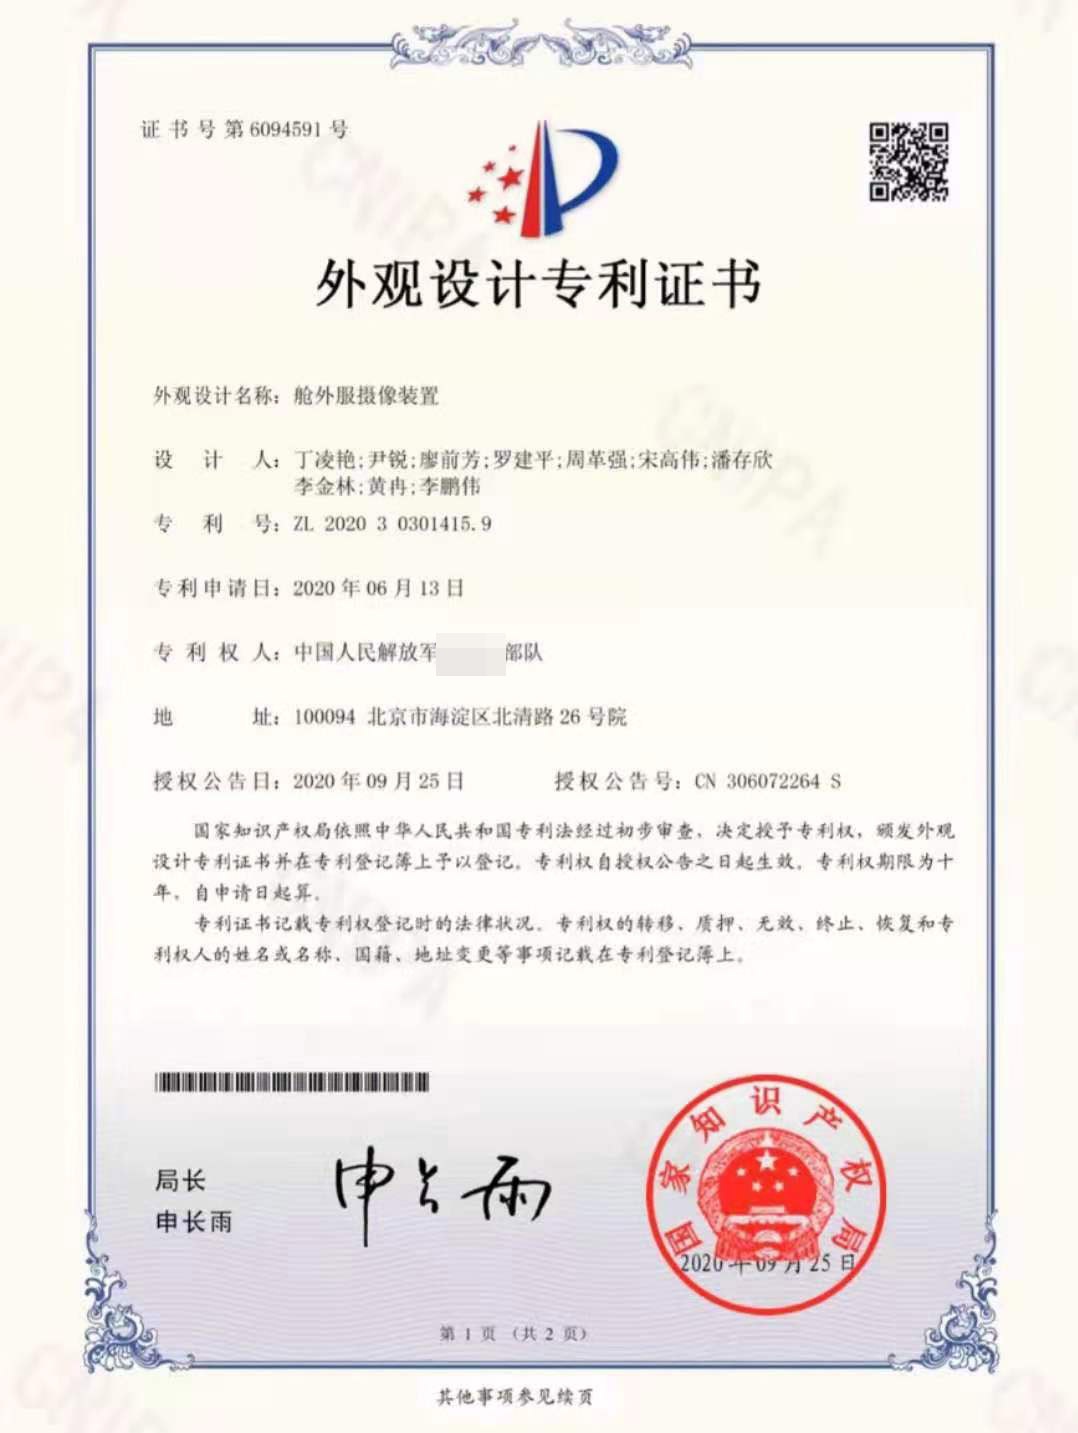 罗建平参与的舱外服专利 图片来源：中国知识产权局官网